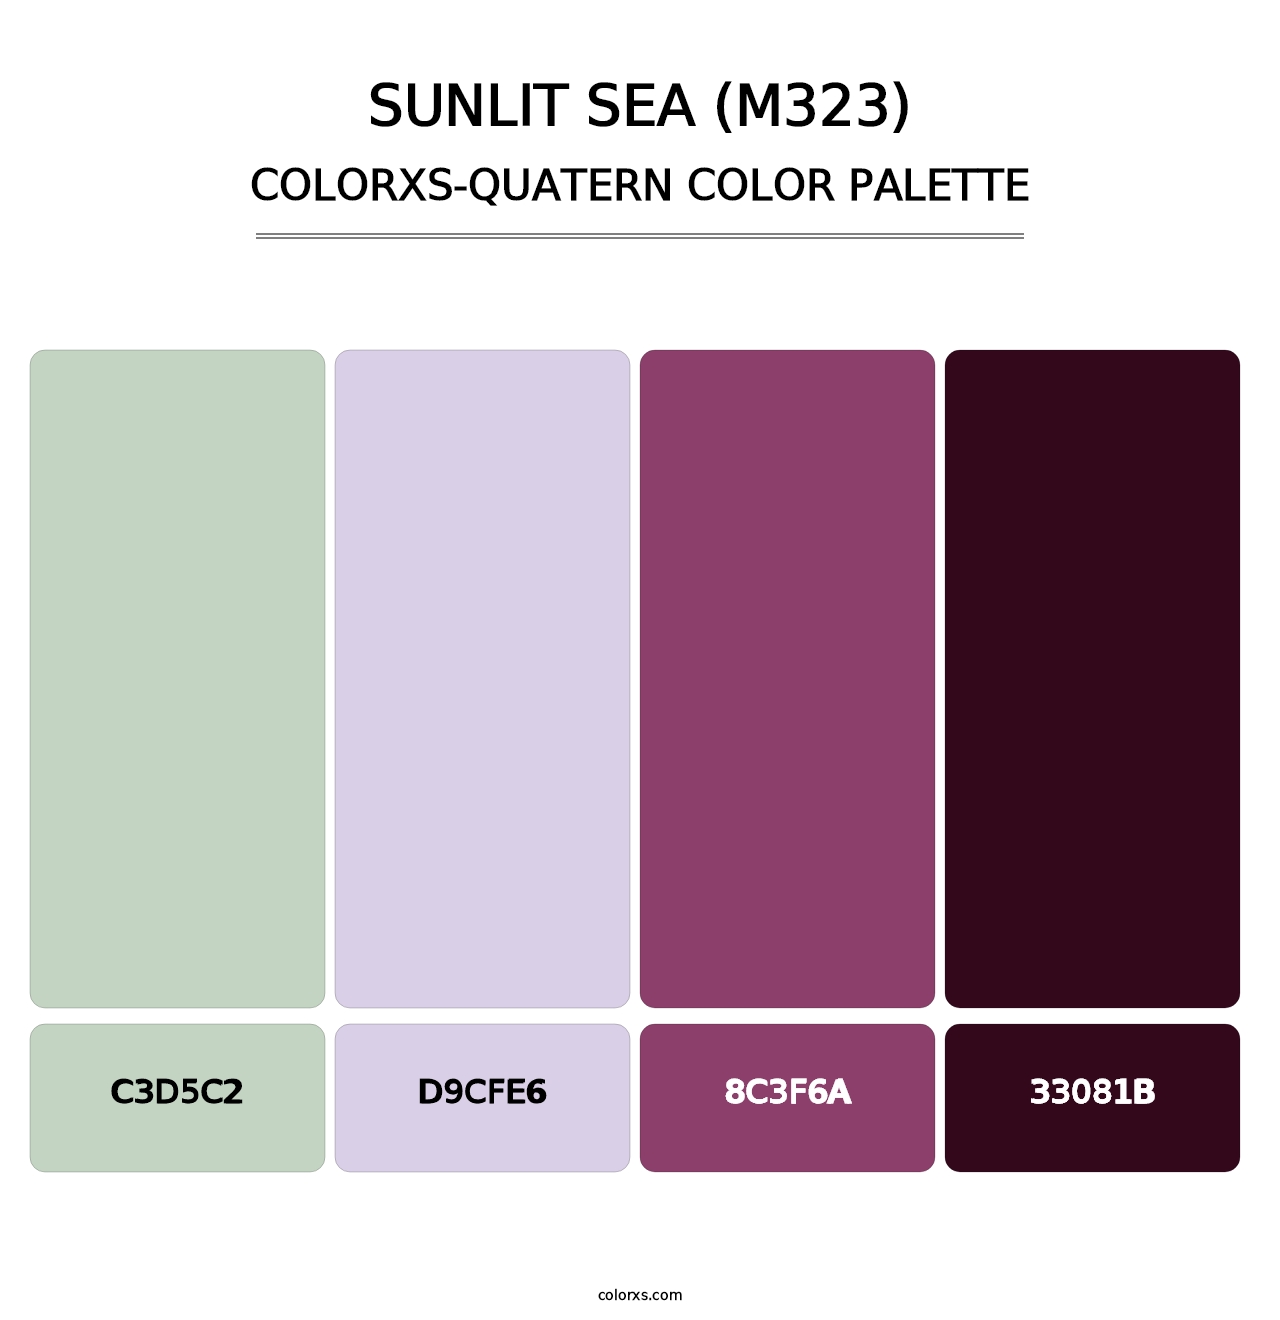 Sunlit Sea (M323) - Colorxs Quatern Palette